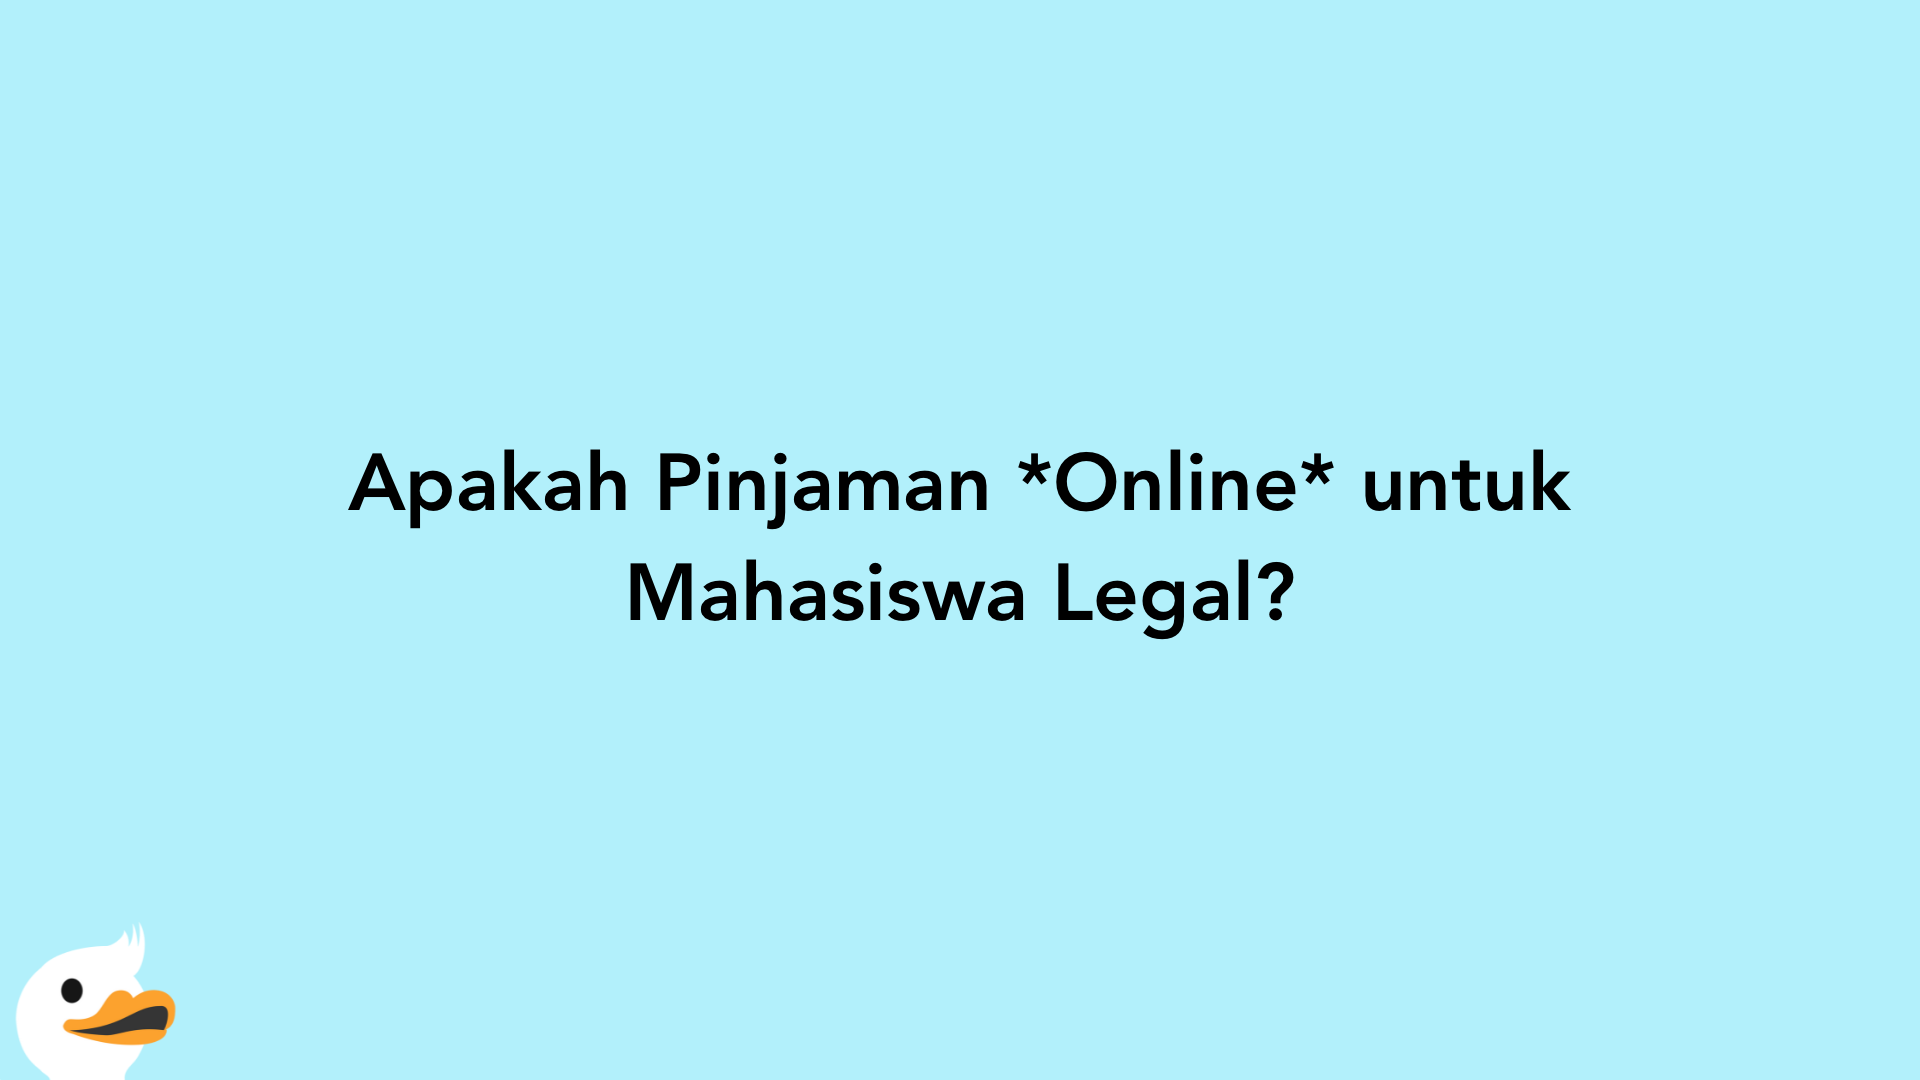 Apakah Pinjaman Online untuk Mahasiswa Legal?